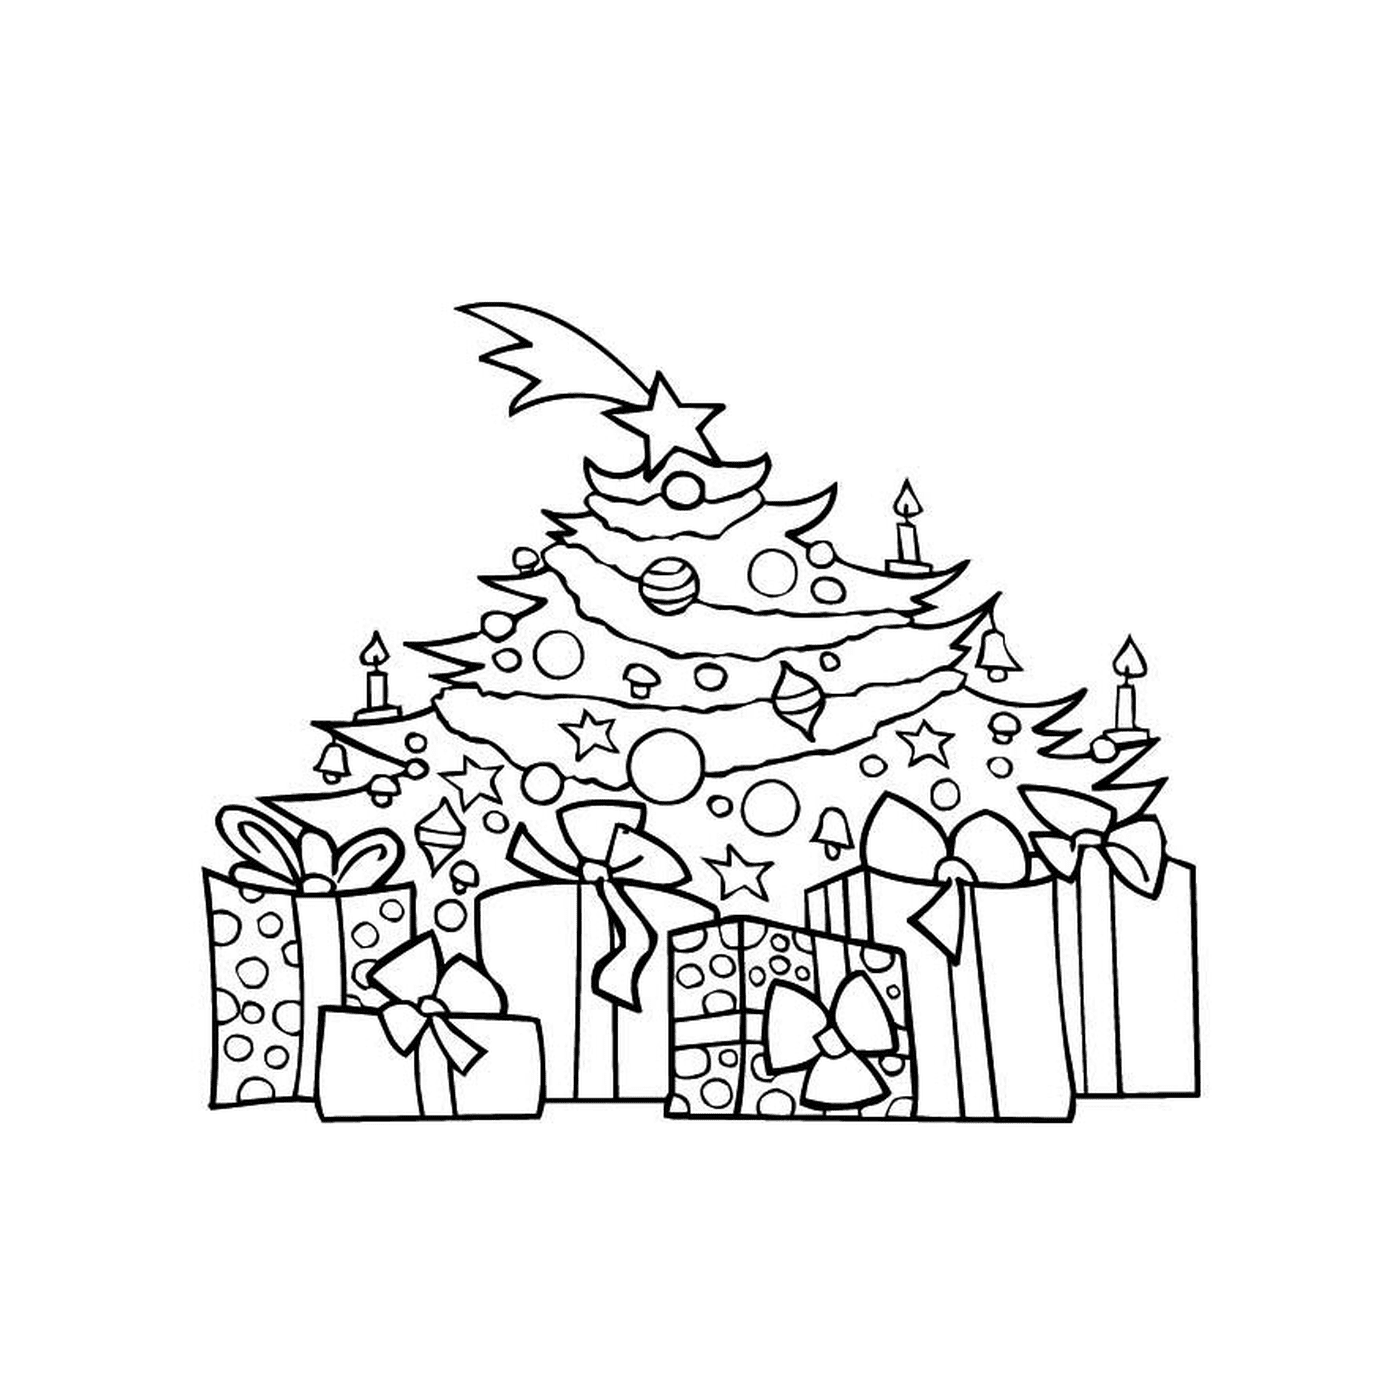  एक क्रिसमस का पेड़ जिसमें तोहफे दिए जाते हैं 